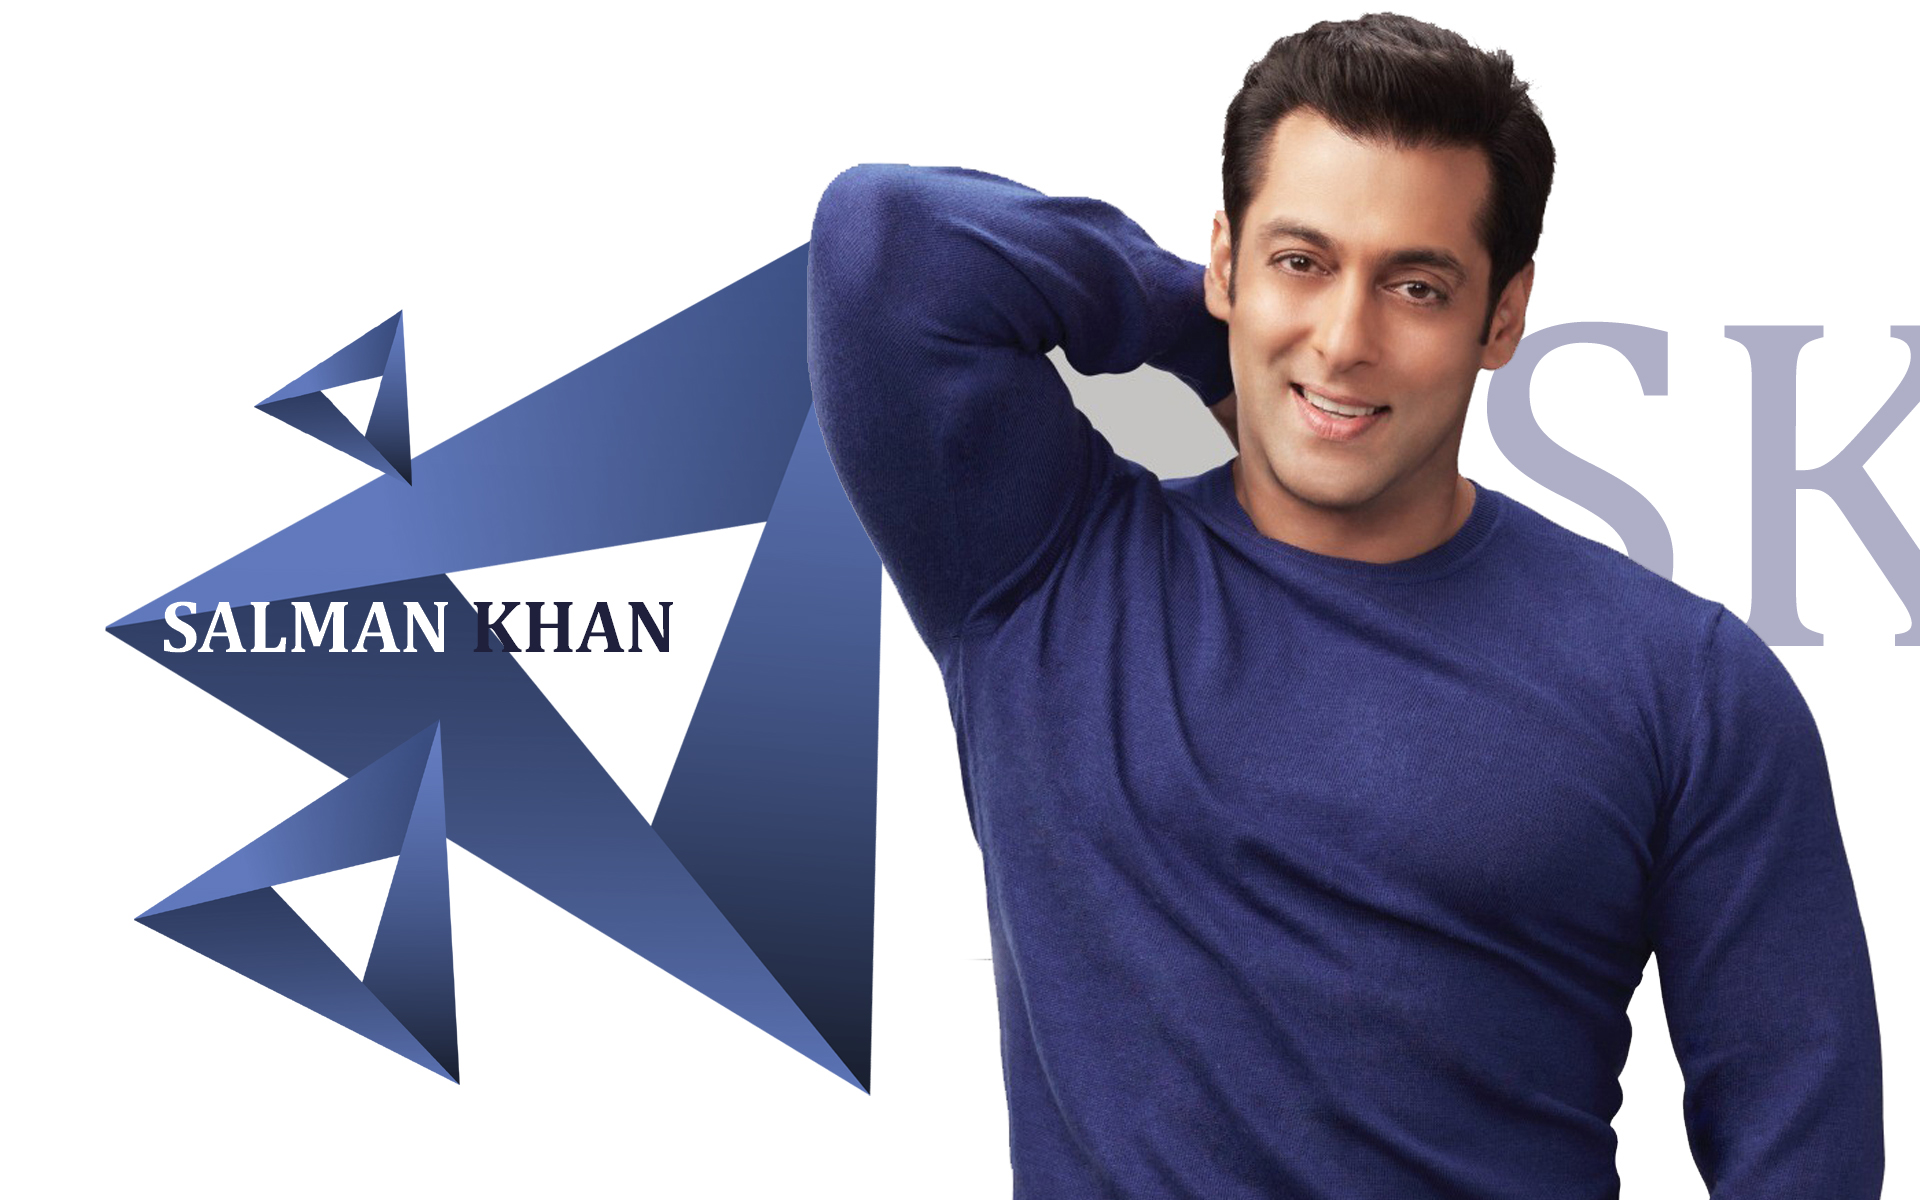 Salman khan wallpaper latest download